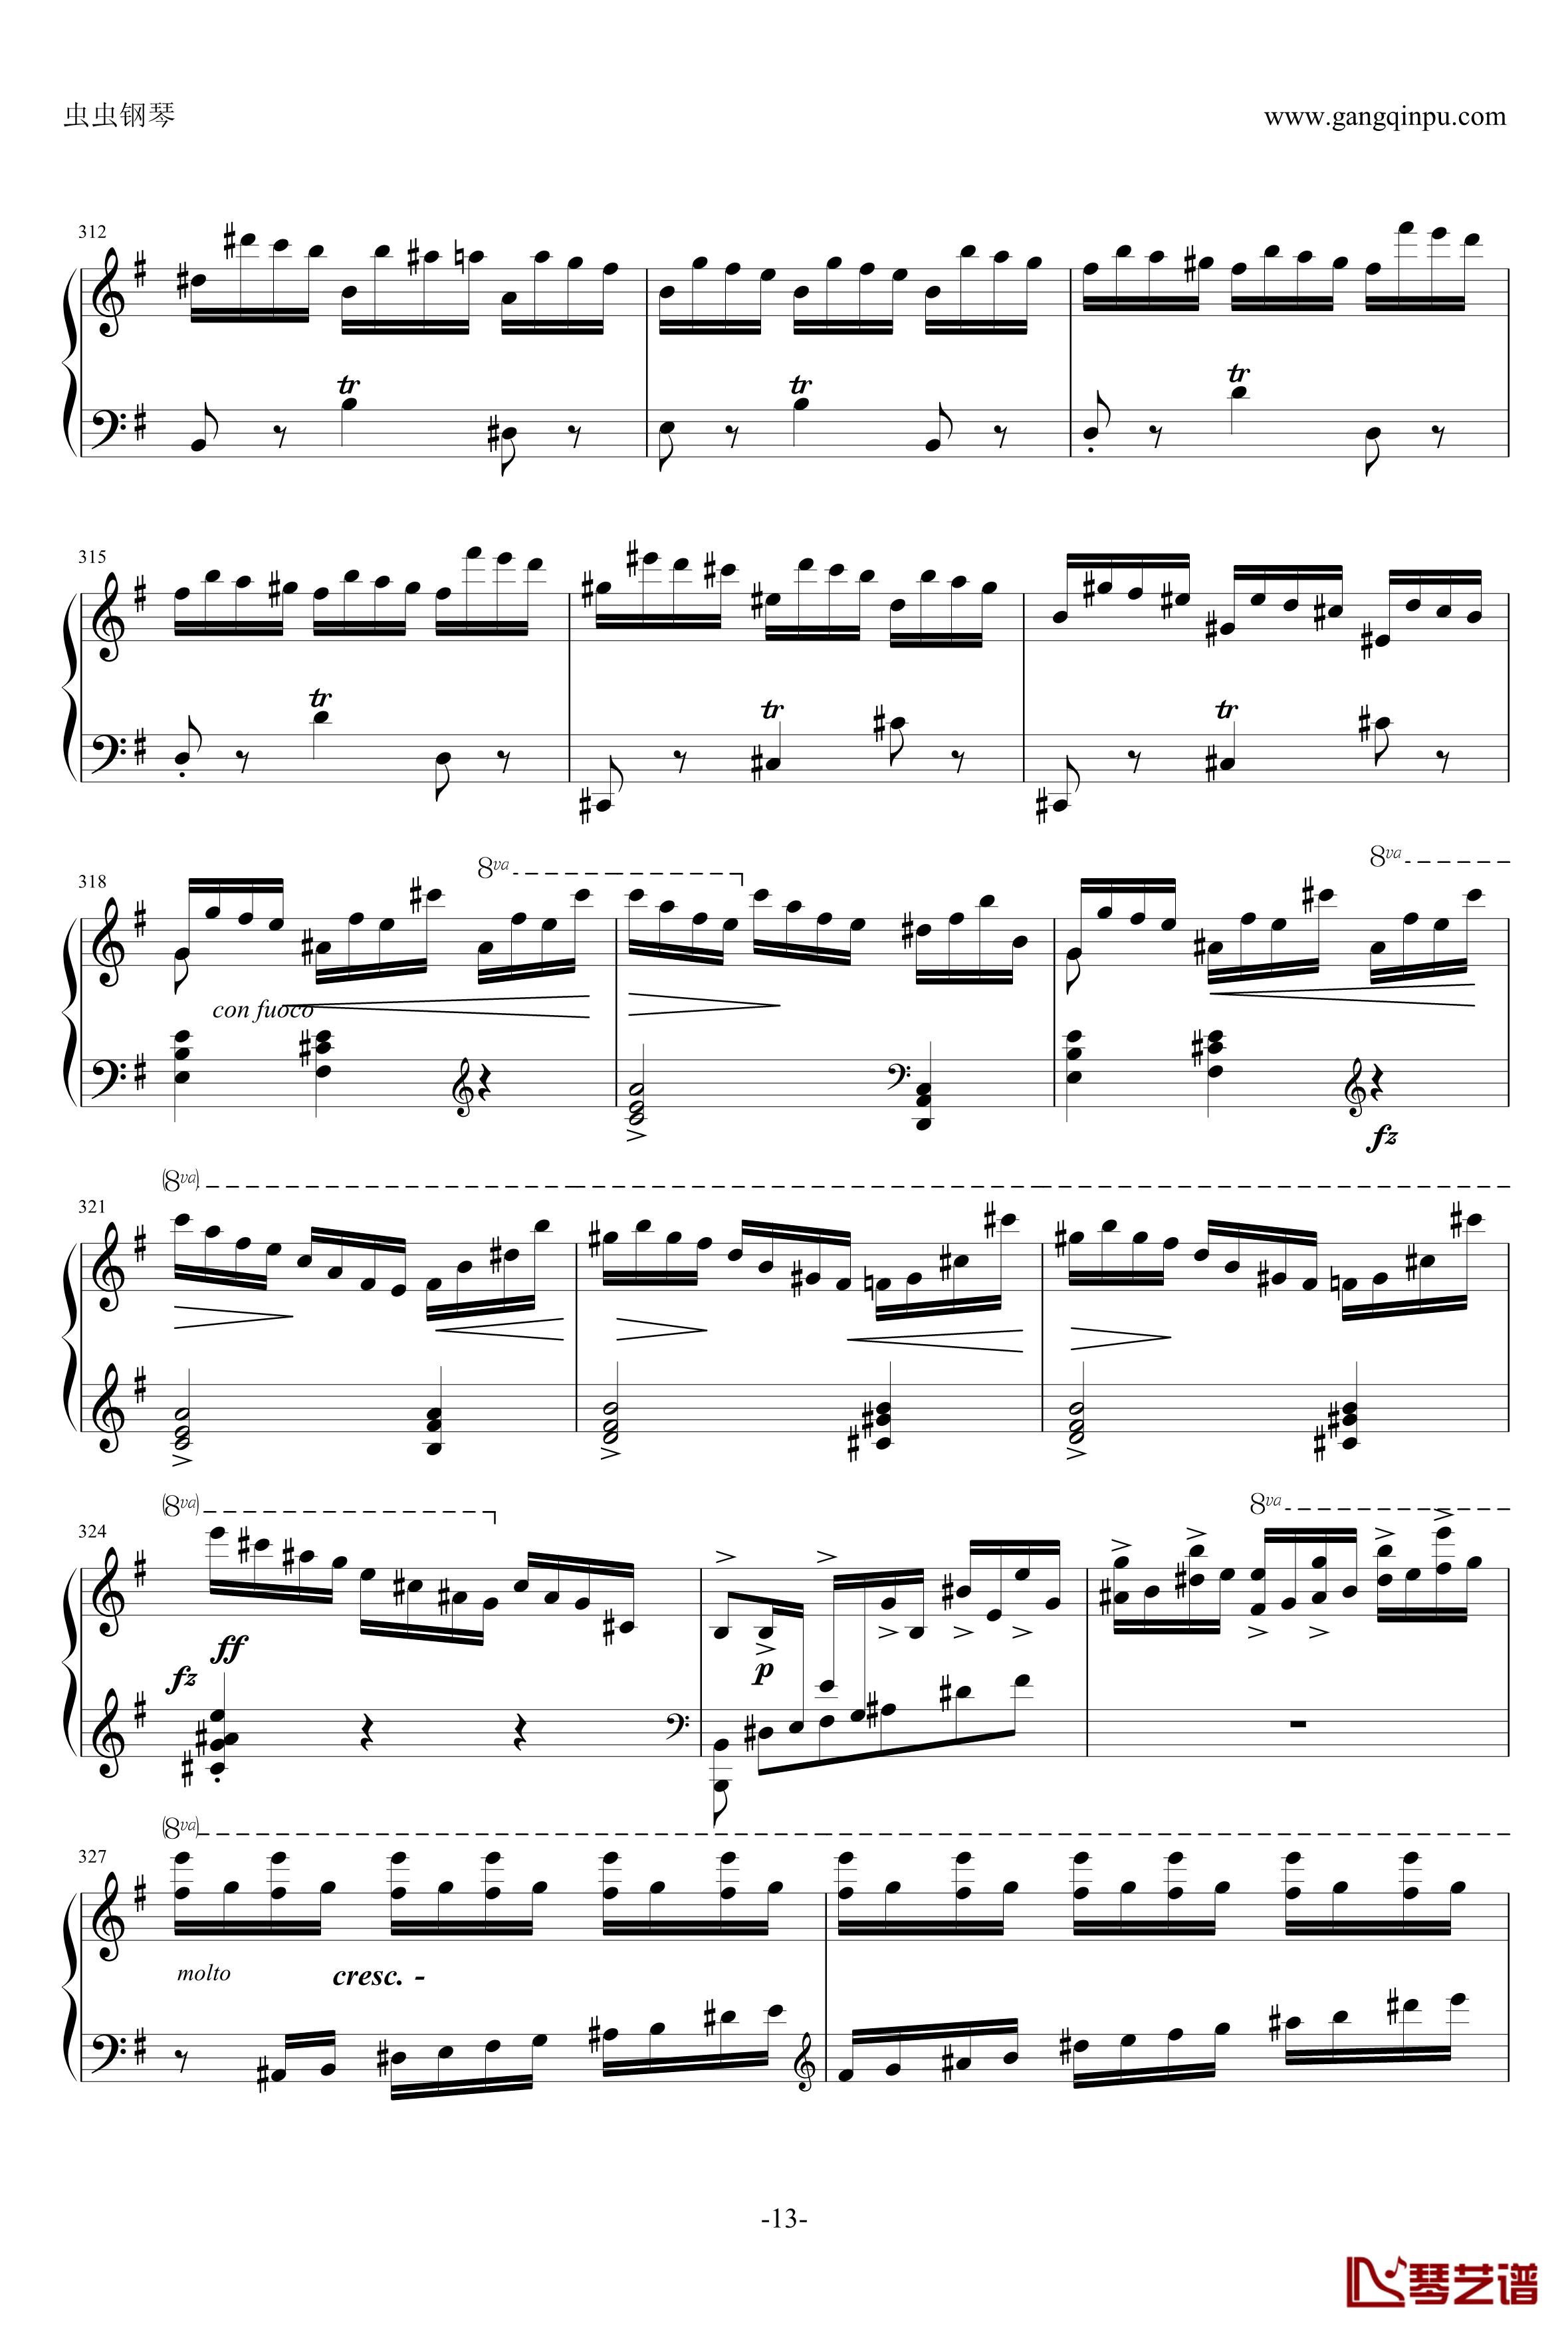 e小调钢琴协奏曲钢琴谱-乐之琴简易钢琴版-肖邦-chopin13